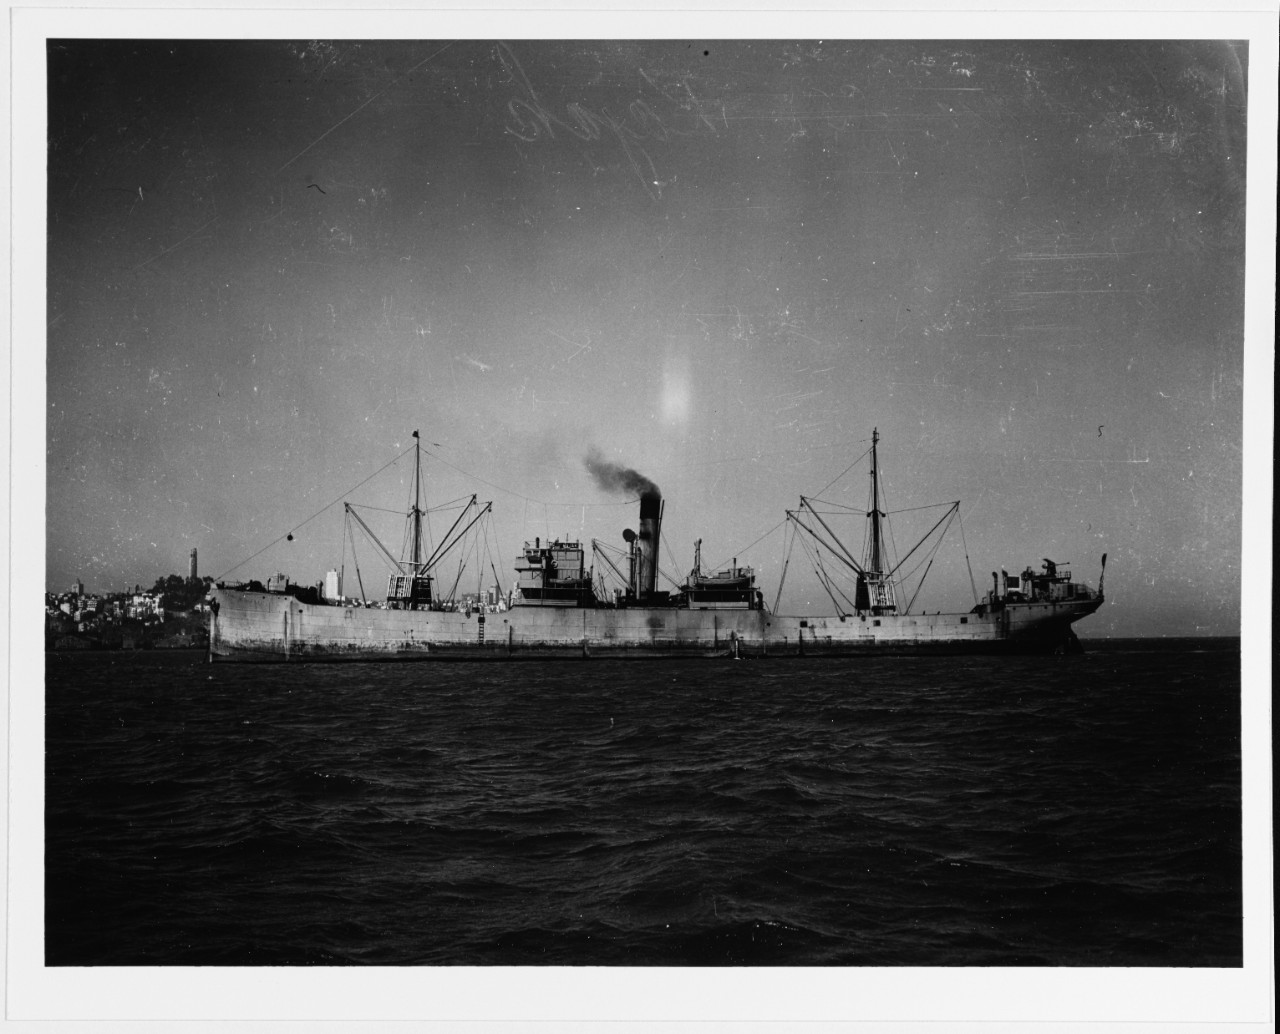 S.S. KAJAK (U.S.S.R. Merchant Cargo Ship, 1905-1950?)